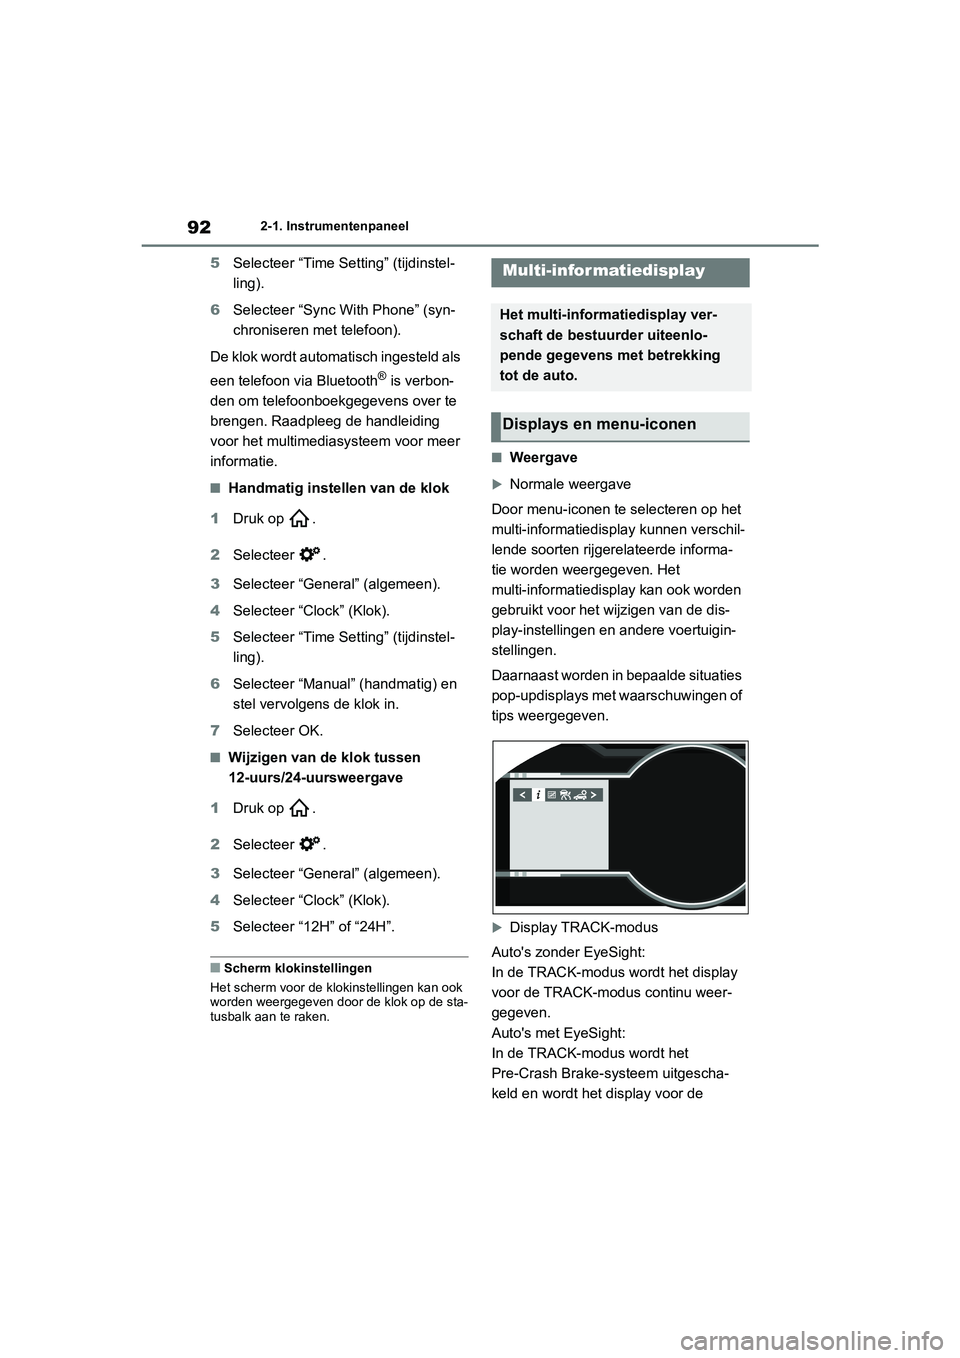 TOYOTA GR86 2022  Instructieboekje (in Dutch) 922-1. Instrumentenpaneel
5Selecteer “Time Setting” (tijdinstel-
ling).
6Selecteer “Sync With Phone” (syn-
chroniseren met telefoon).
De klok wordt automatisch ingesteld als 
een telefoon via 